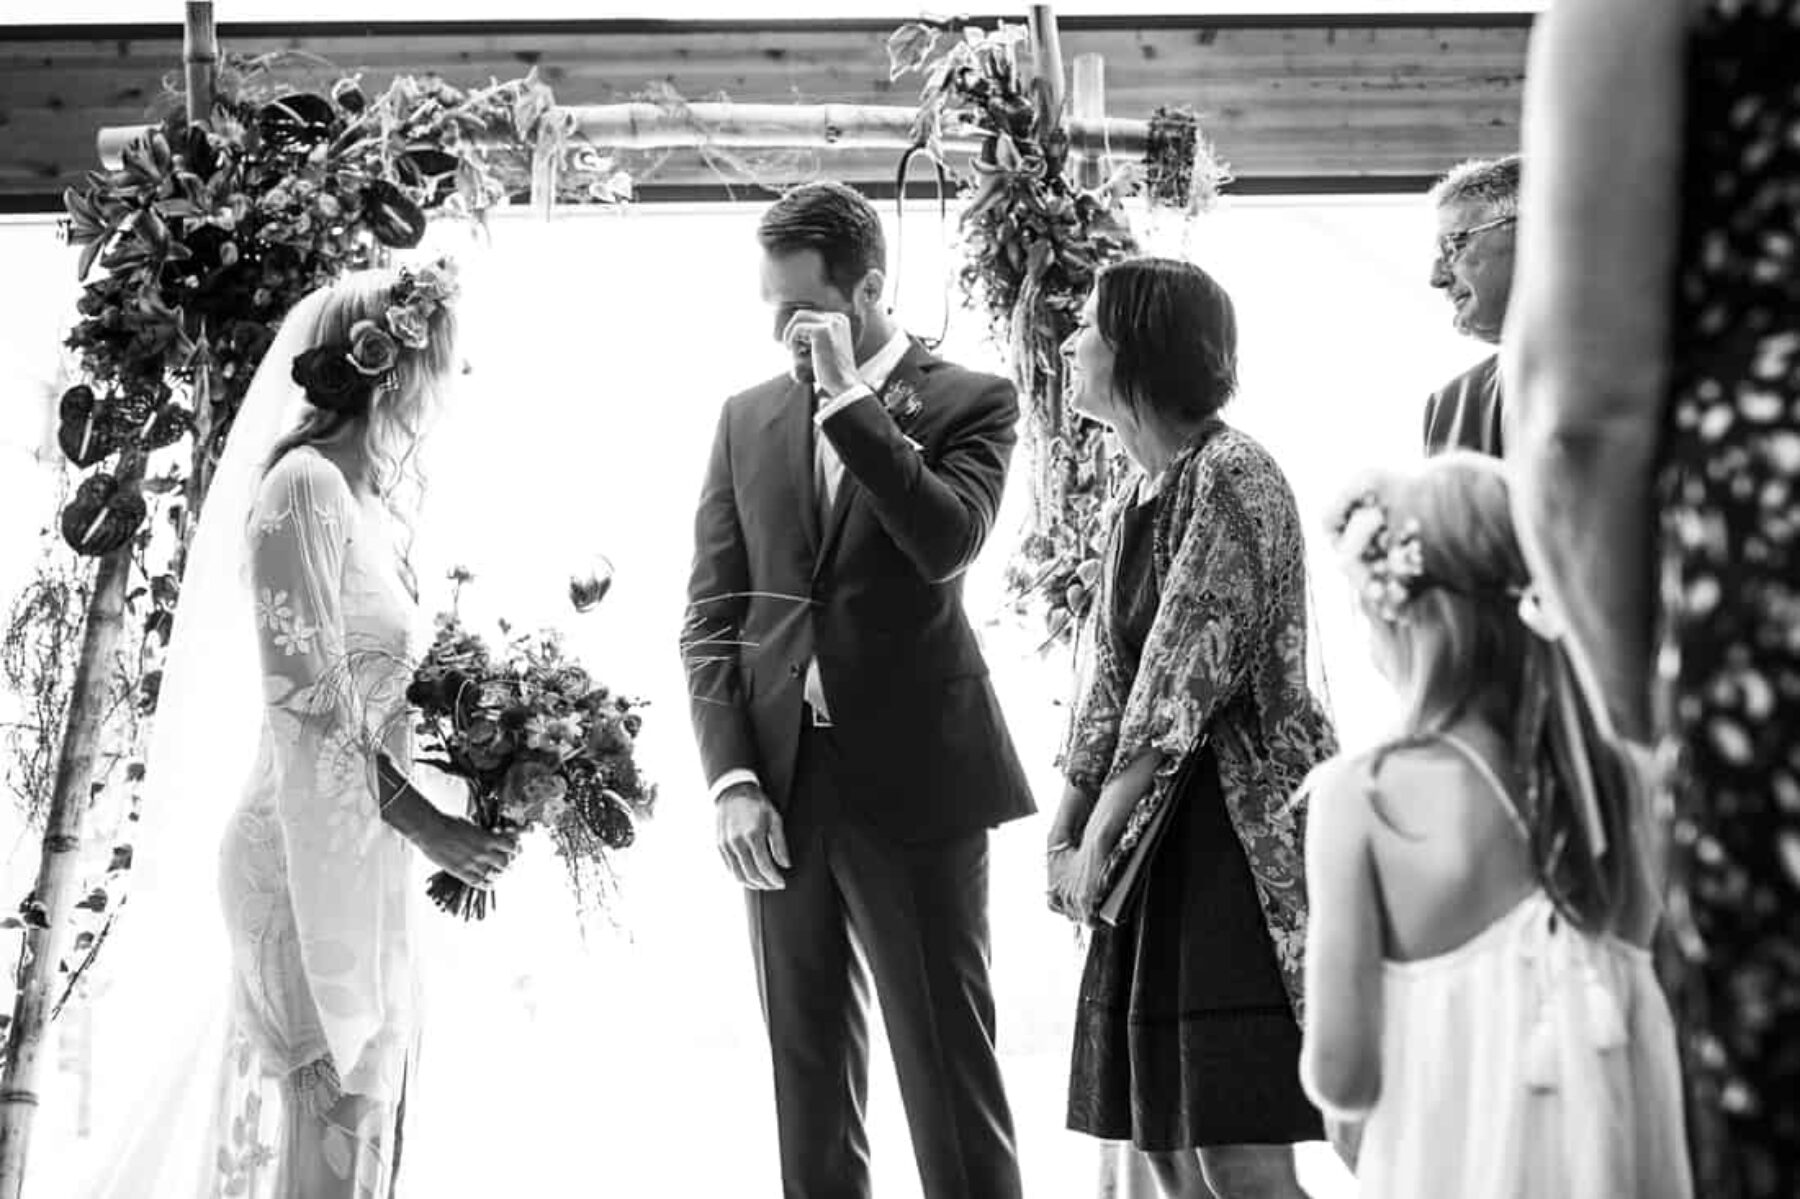 flower-filled Margaret River wedding at Bunker Beach House